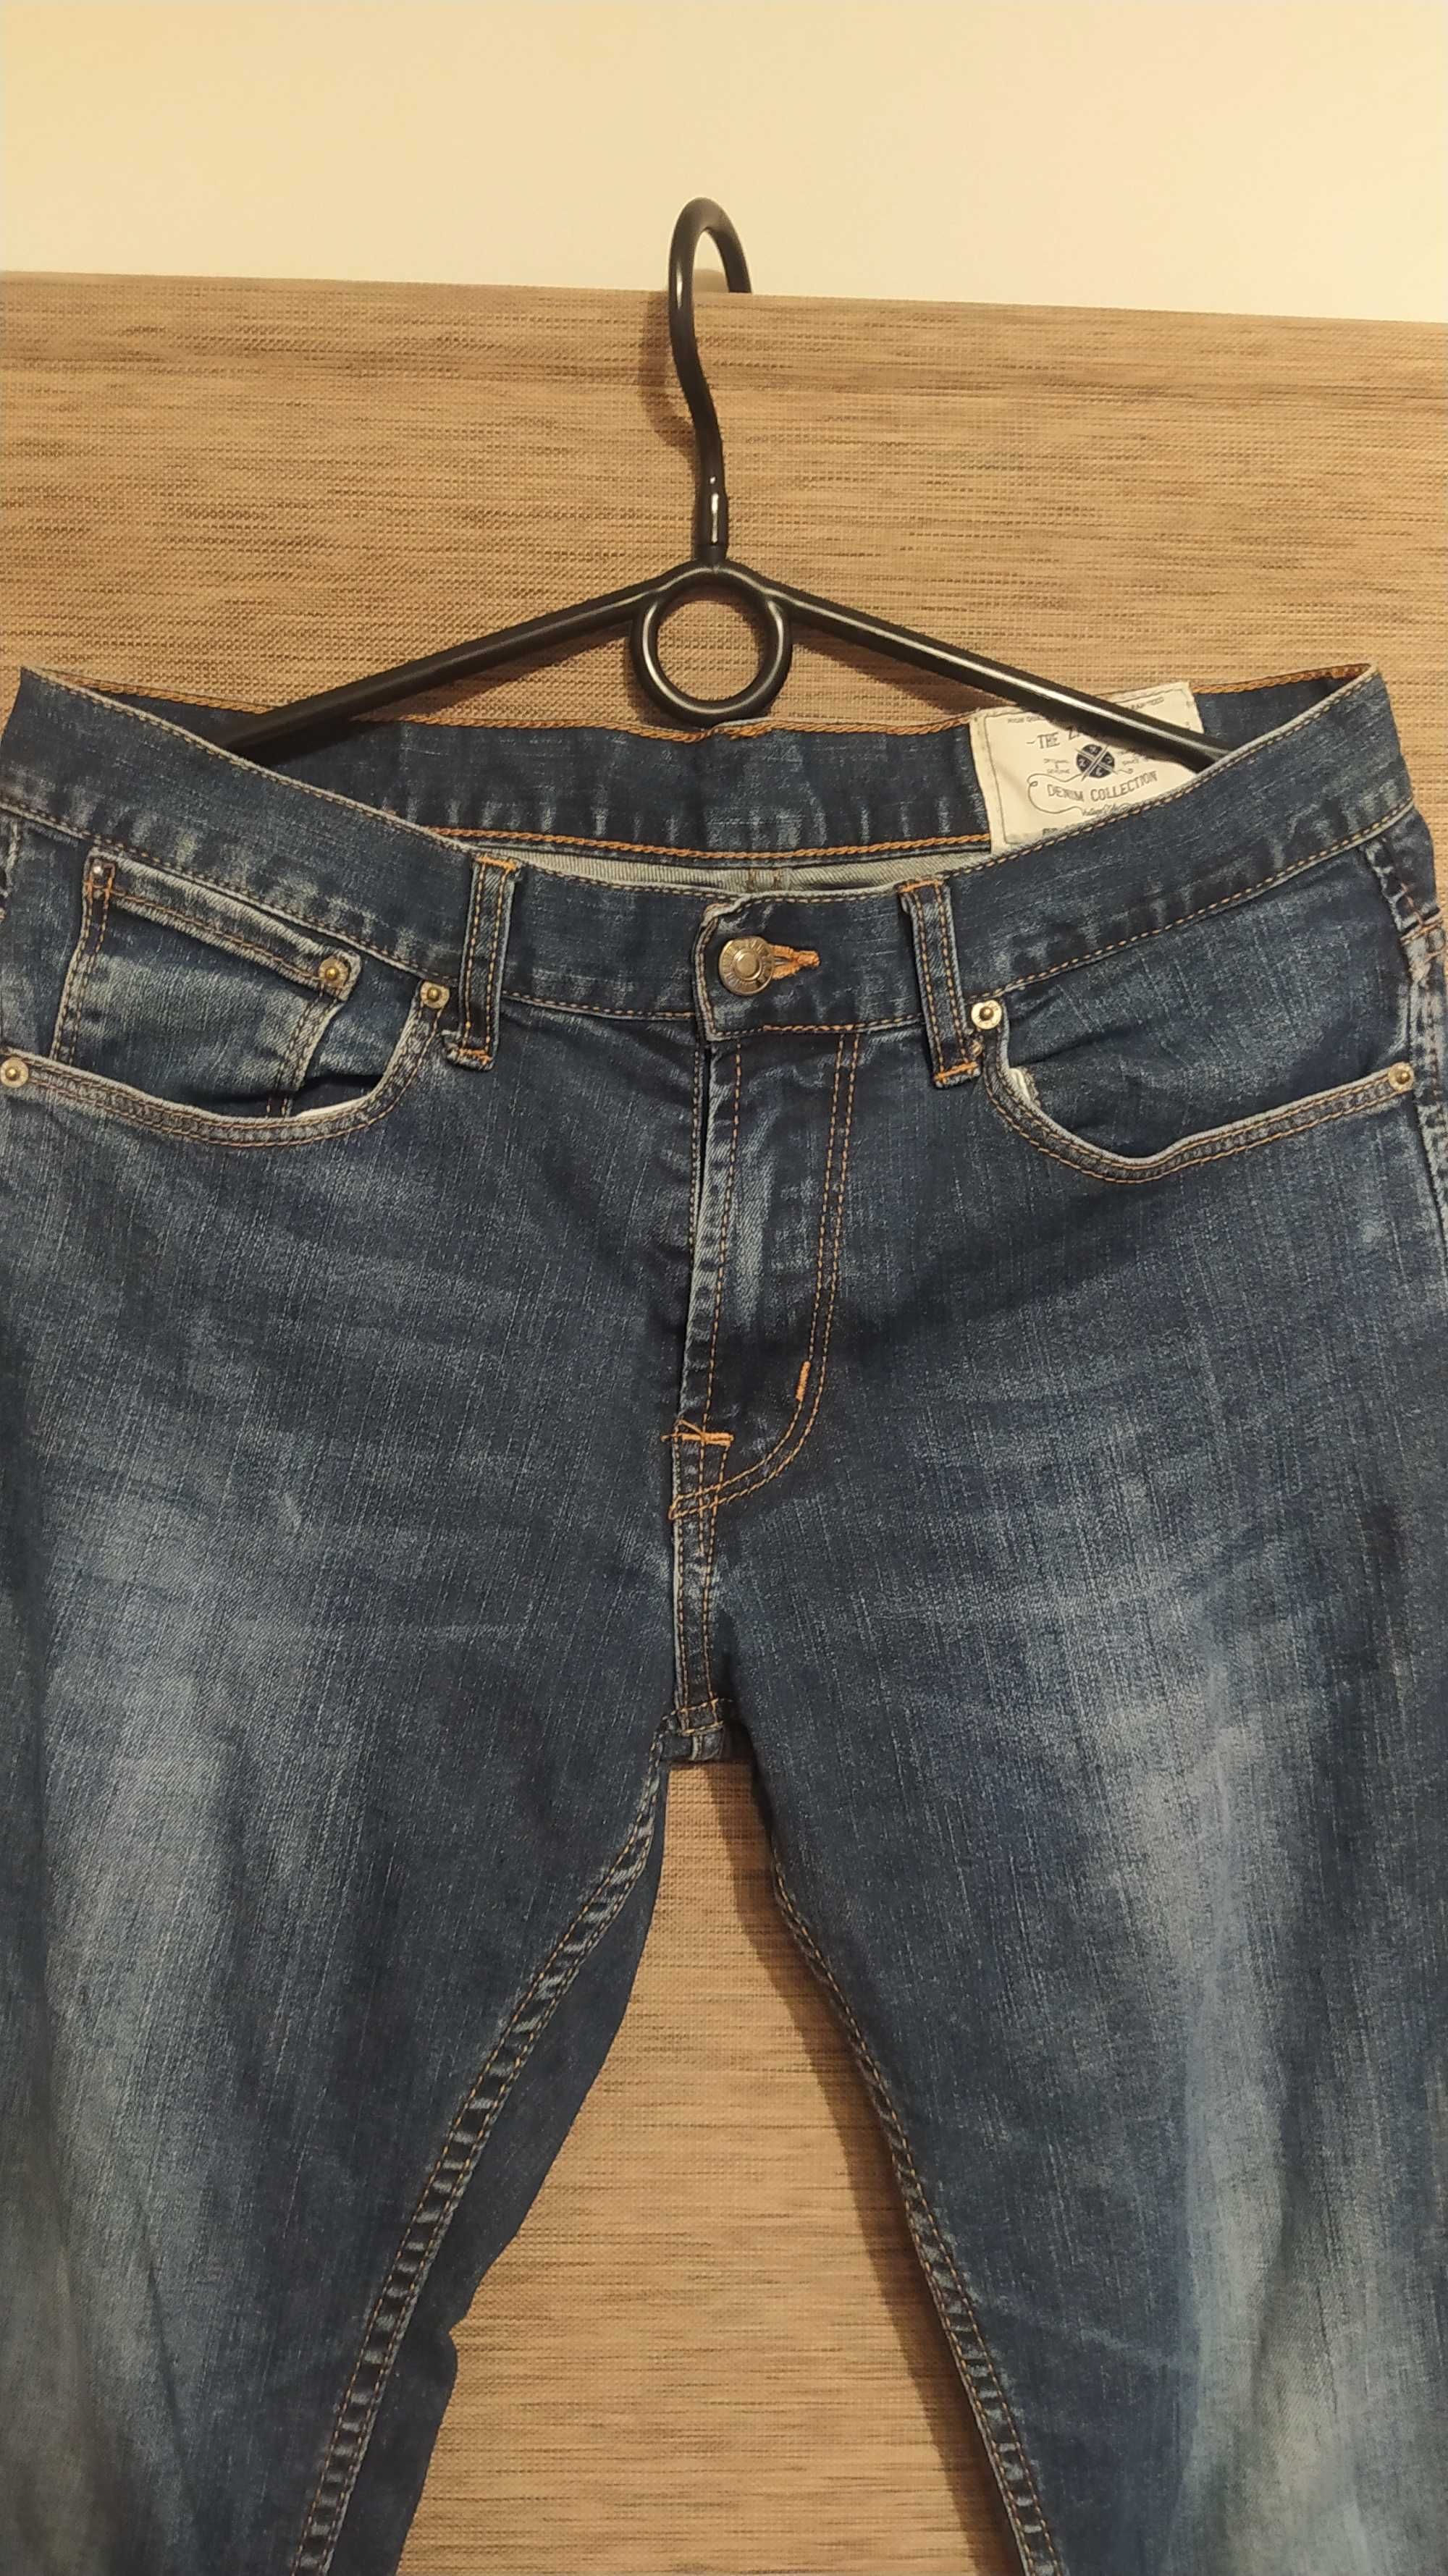 Spodnie męskie/młodzieżowe jeansowe Zara Men.